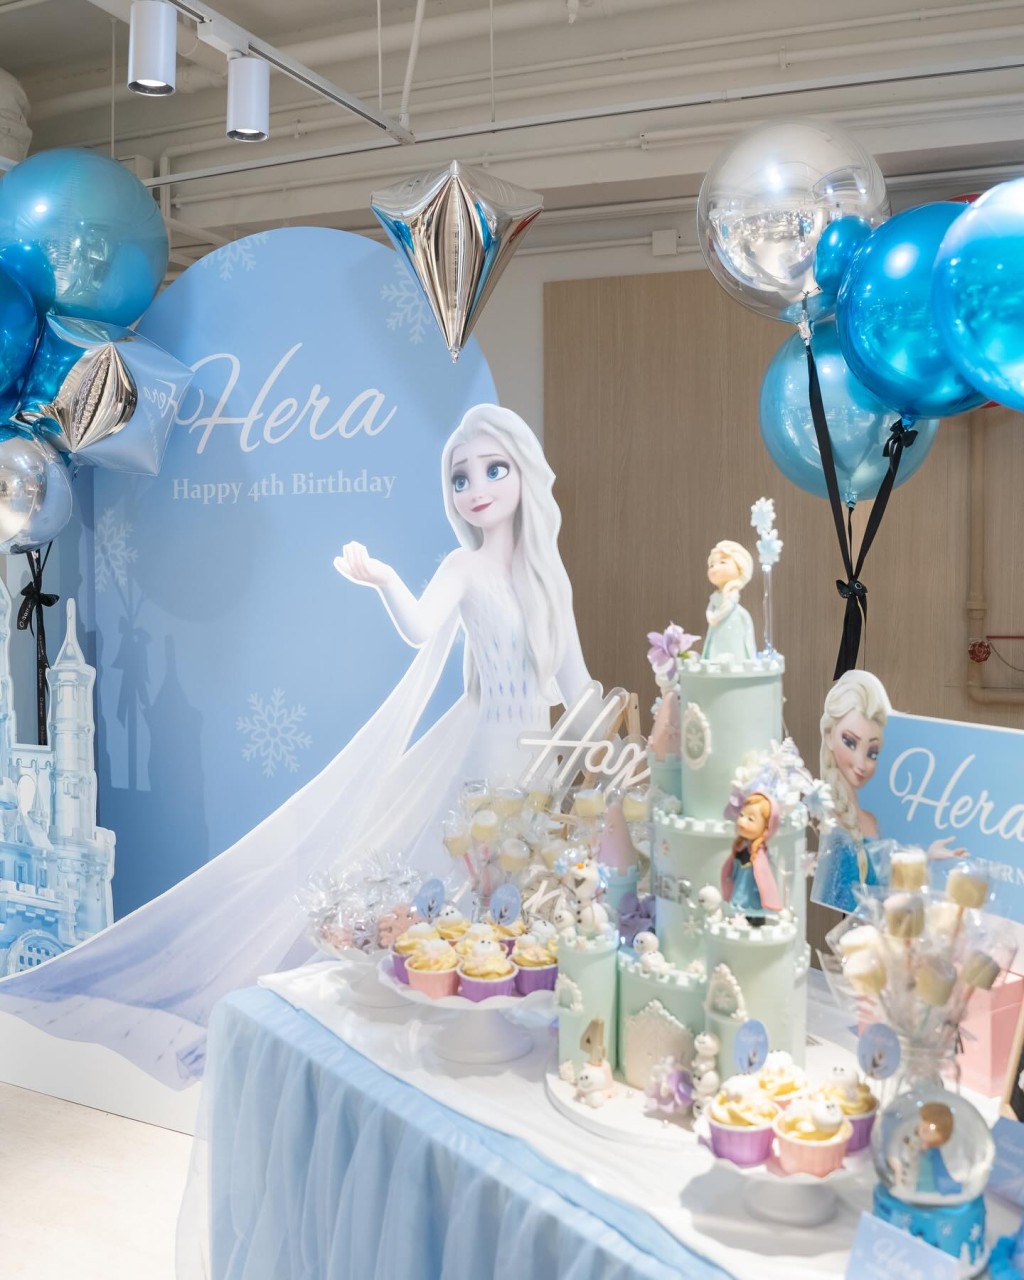 现场配合主题《冰雪奇缘》以粉蓝及银色的气球布置，布景板写上“Hera Happy 4th Birthday”。